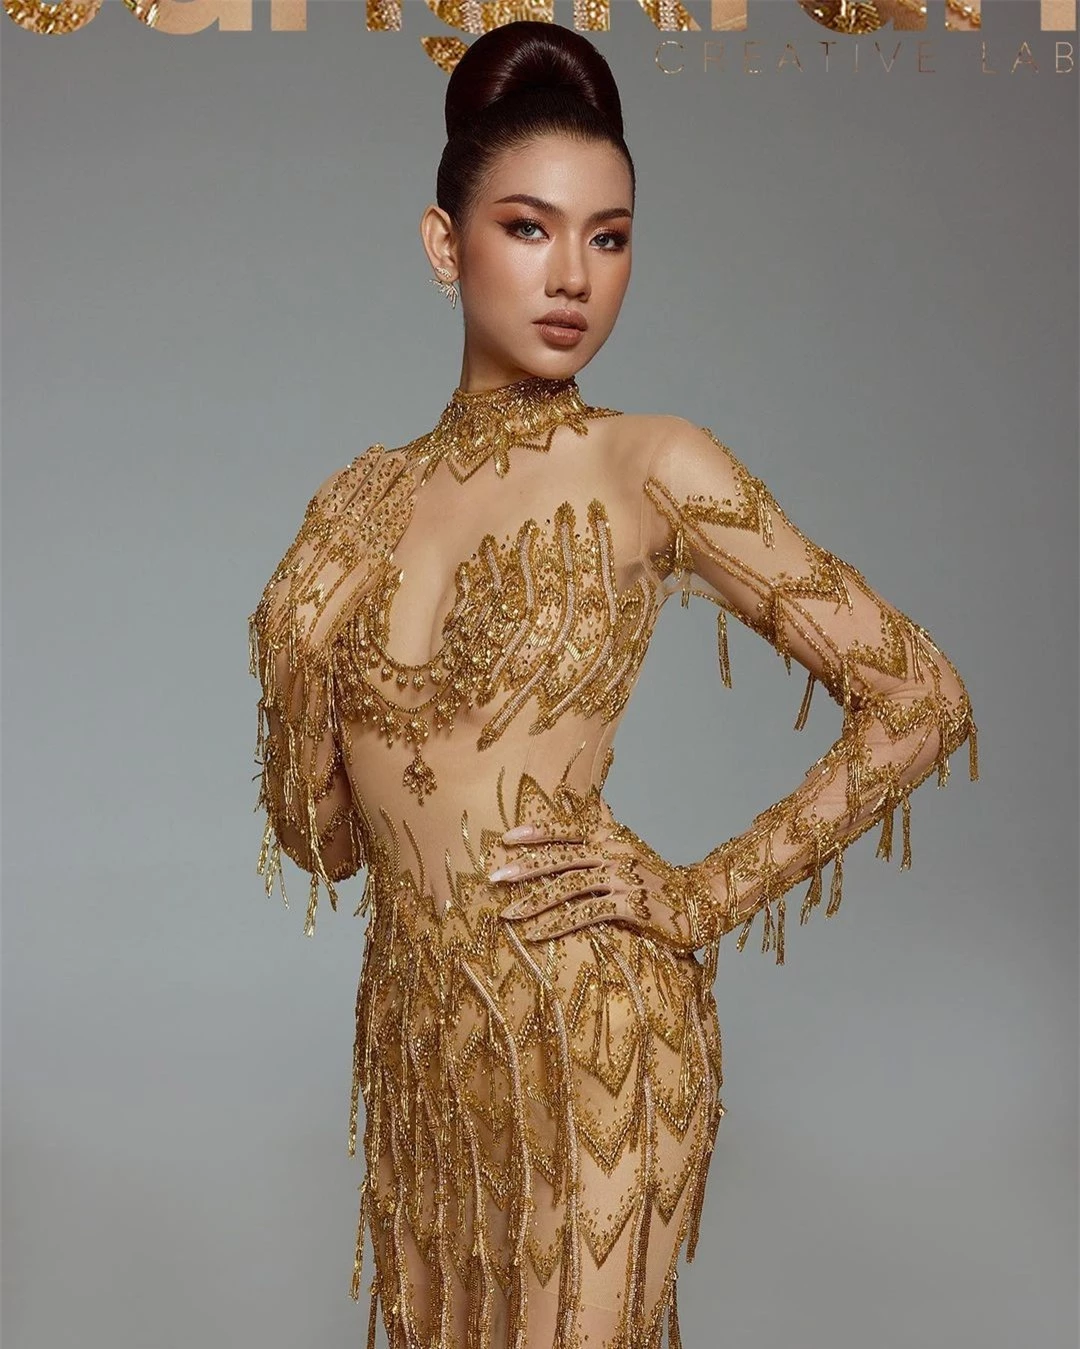 Tân Hoa hậu Hoàn vũ Campuchia được khen ngợi ảnh 11